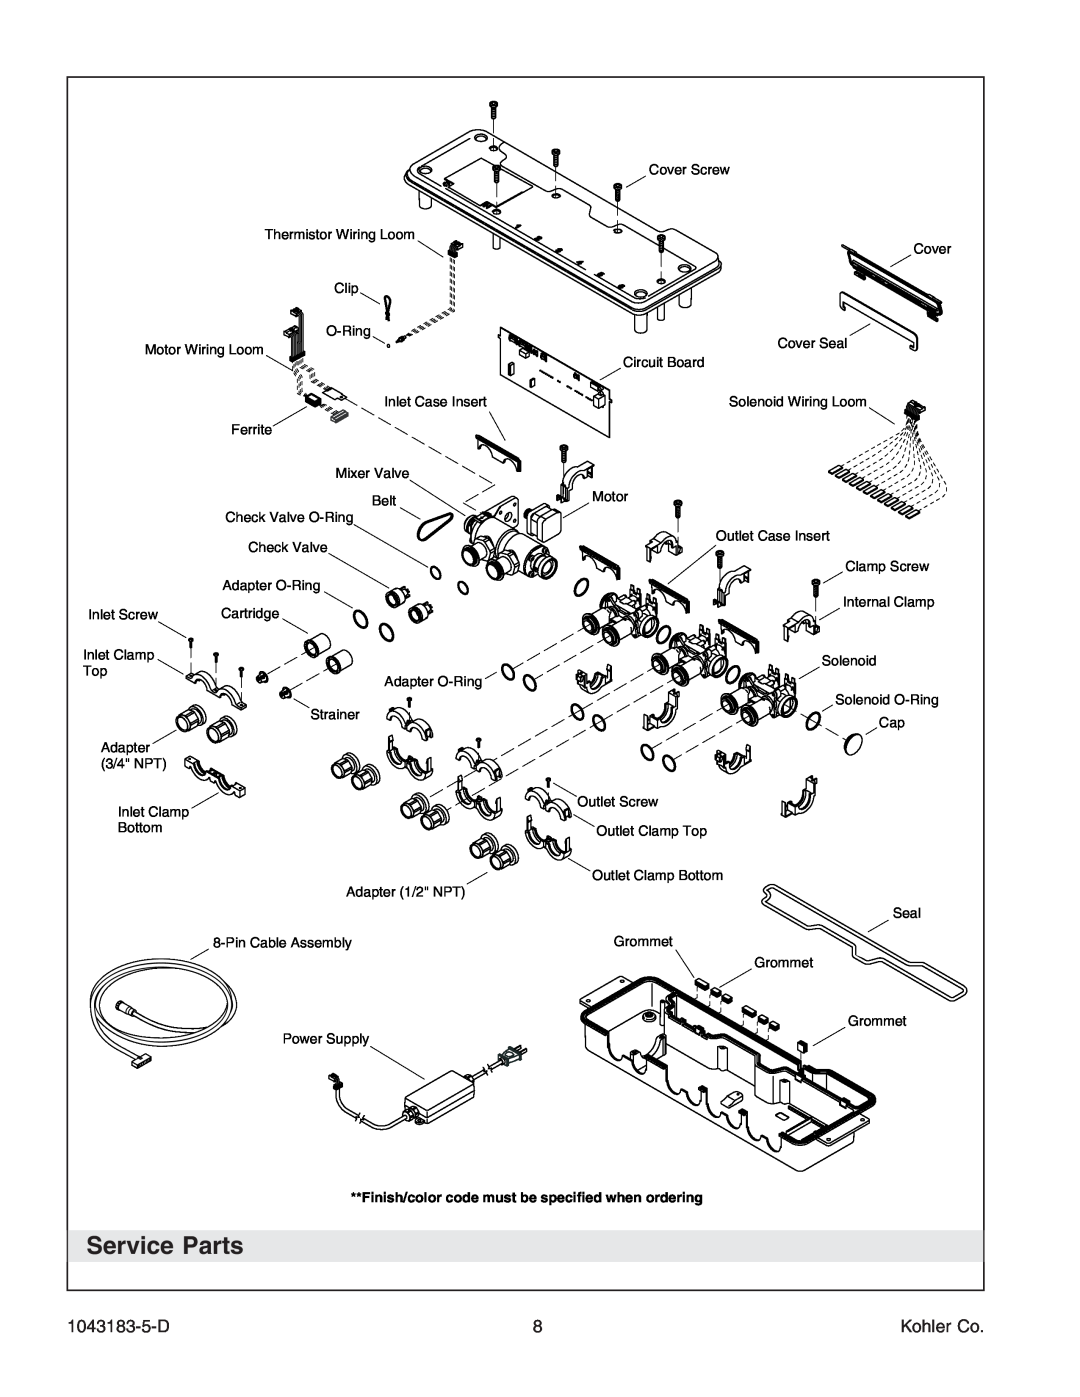 Kohler 1043183-5-D manual Service Parts, Kohler Co 